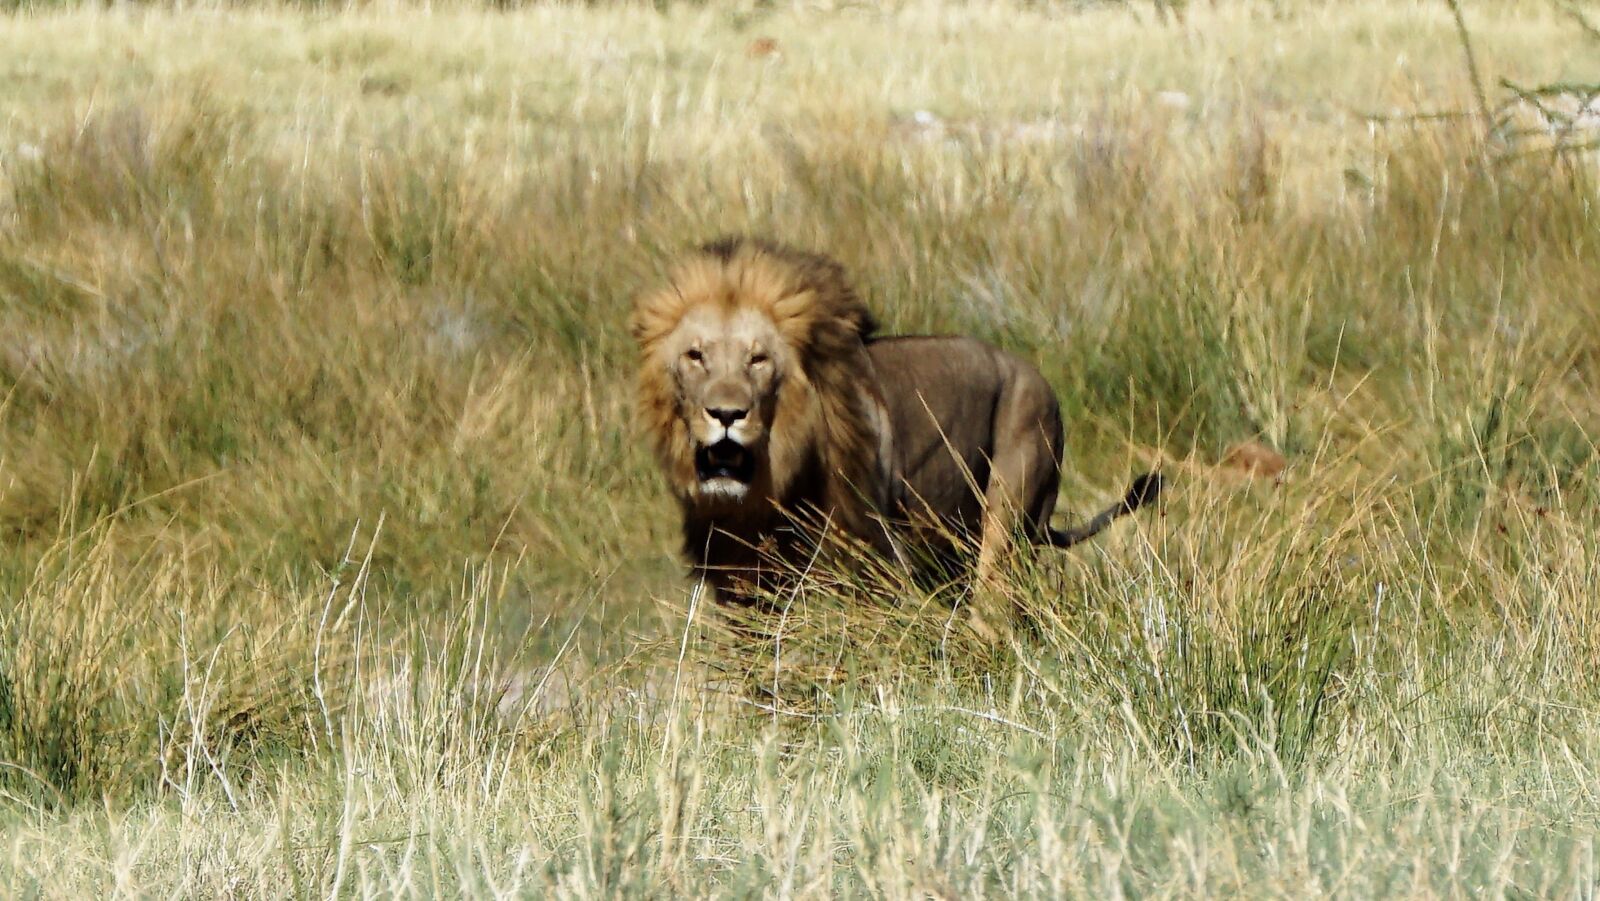 Sony a5100 sample photo. Lion, africa, savanna photography